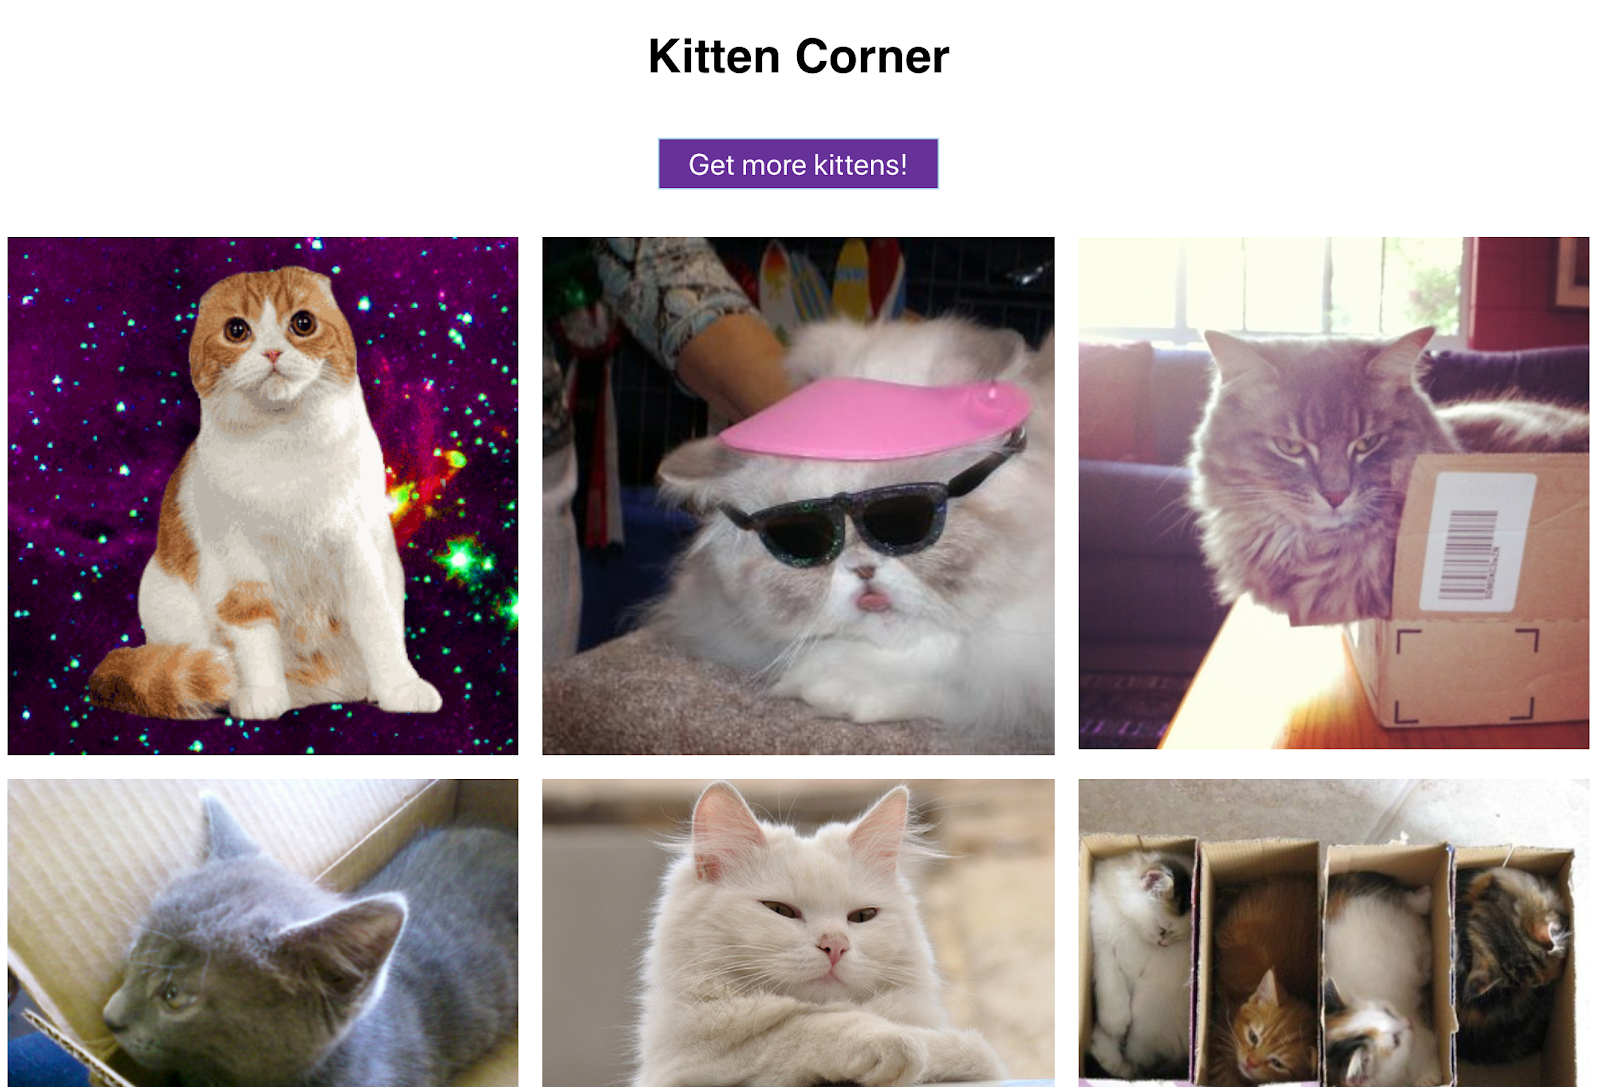 网格中的可爱猫咪图片以及一个用于显示更多内容的按钮 - 这个 Web 应用真的是一应俱全！